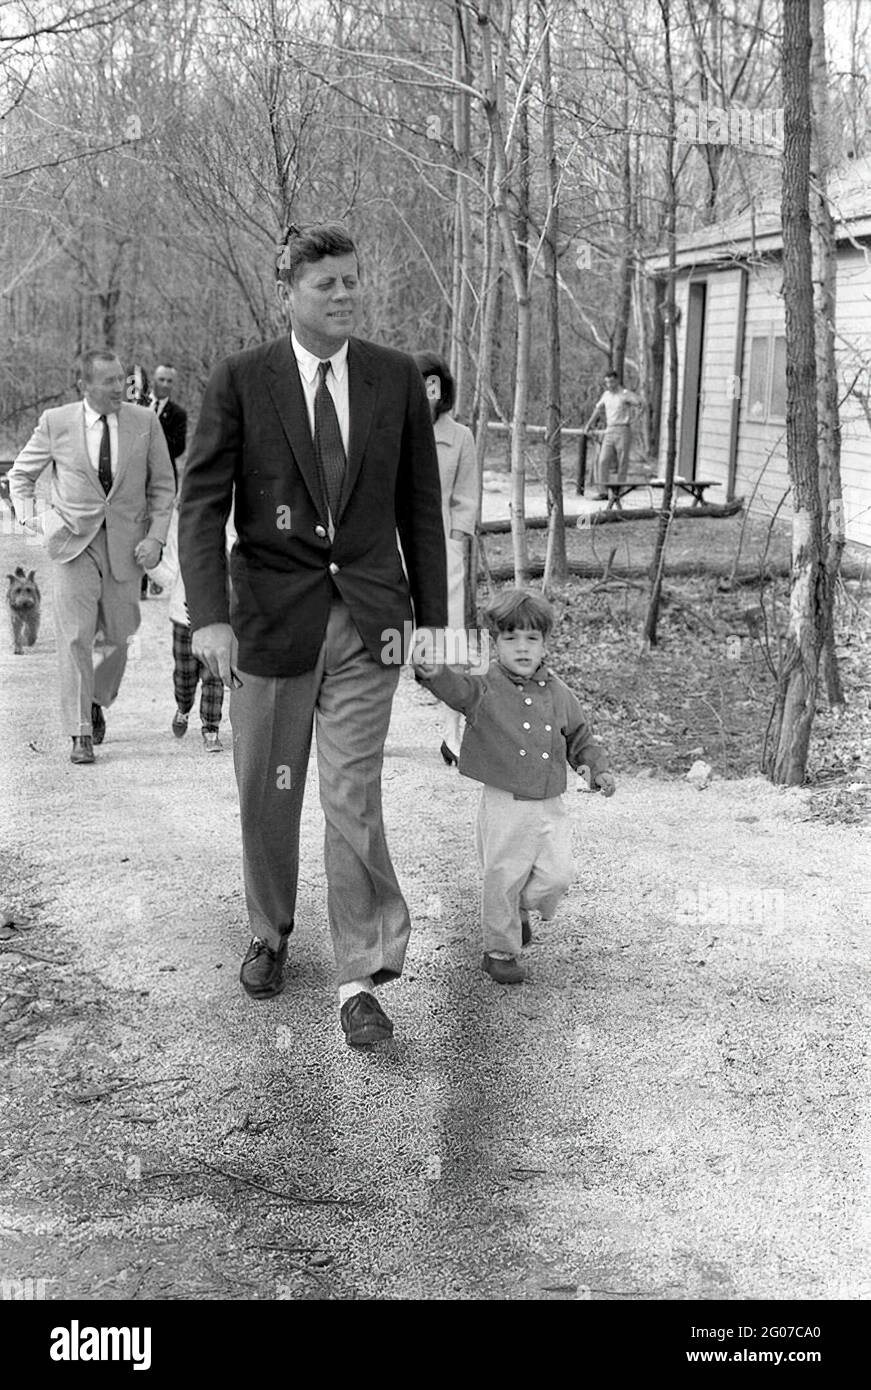 31 mars 1963 week-end au Camp David. Le président John F. Kennedy et son  fils John, Jr. Marchent sur un chemin pendant un week-end au Camp David.  Également en photo : la